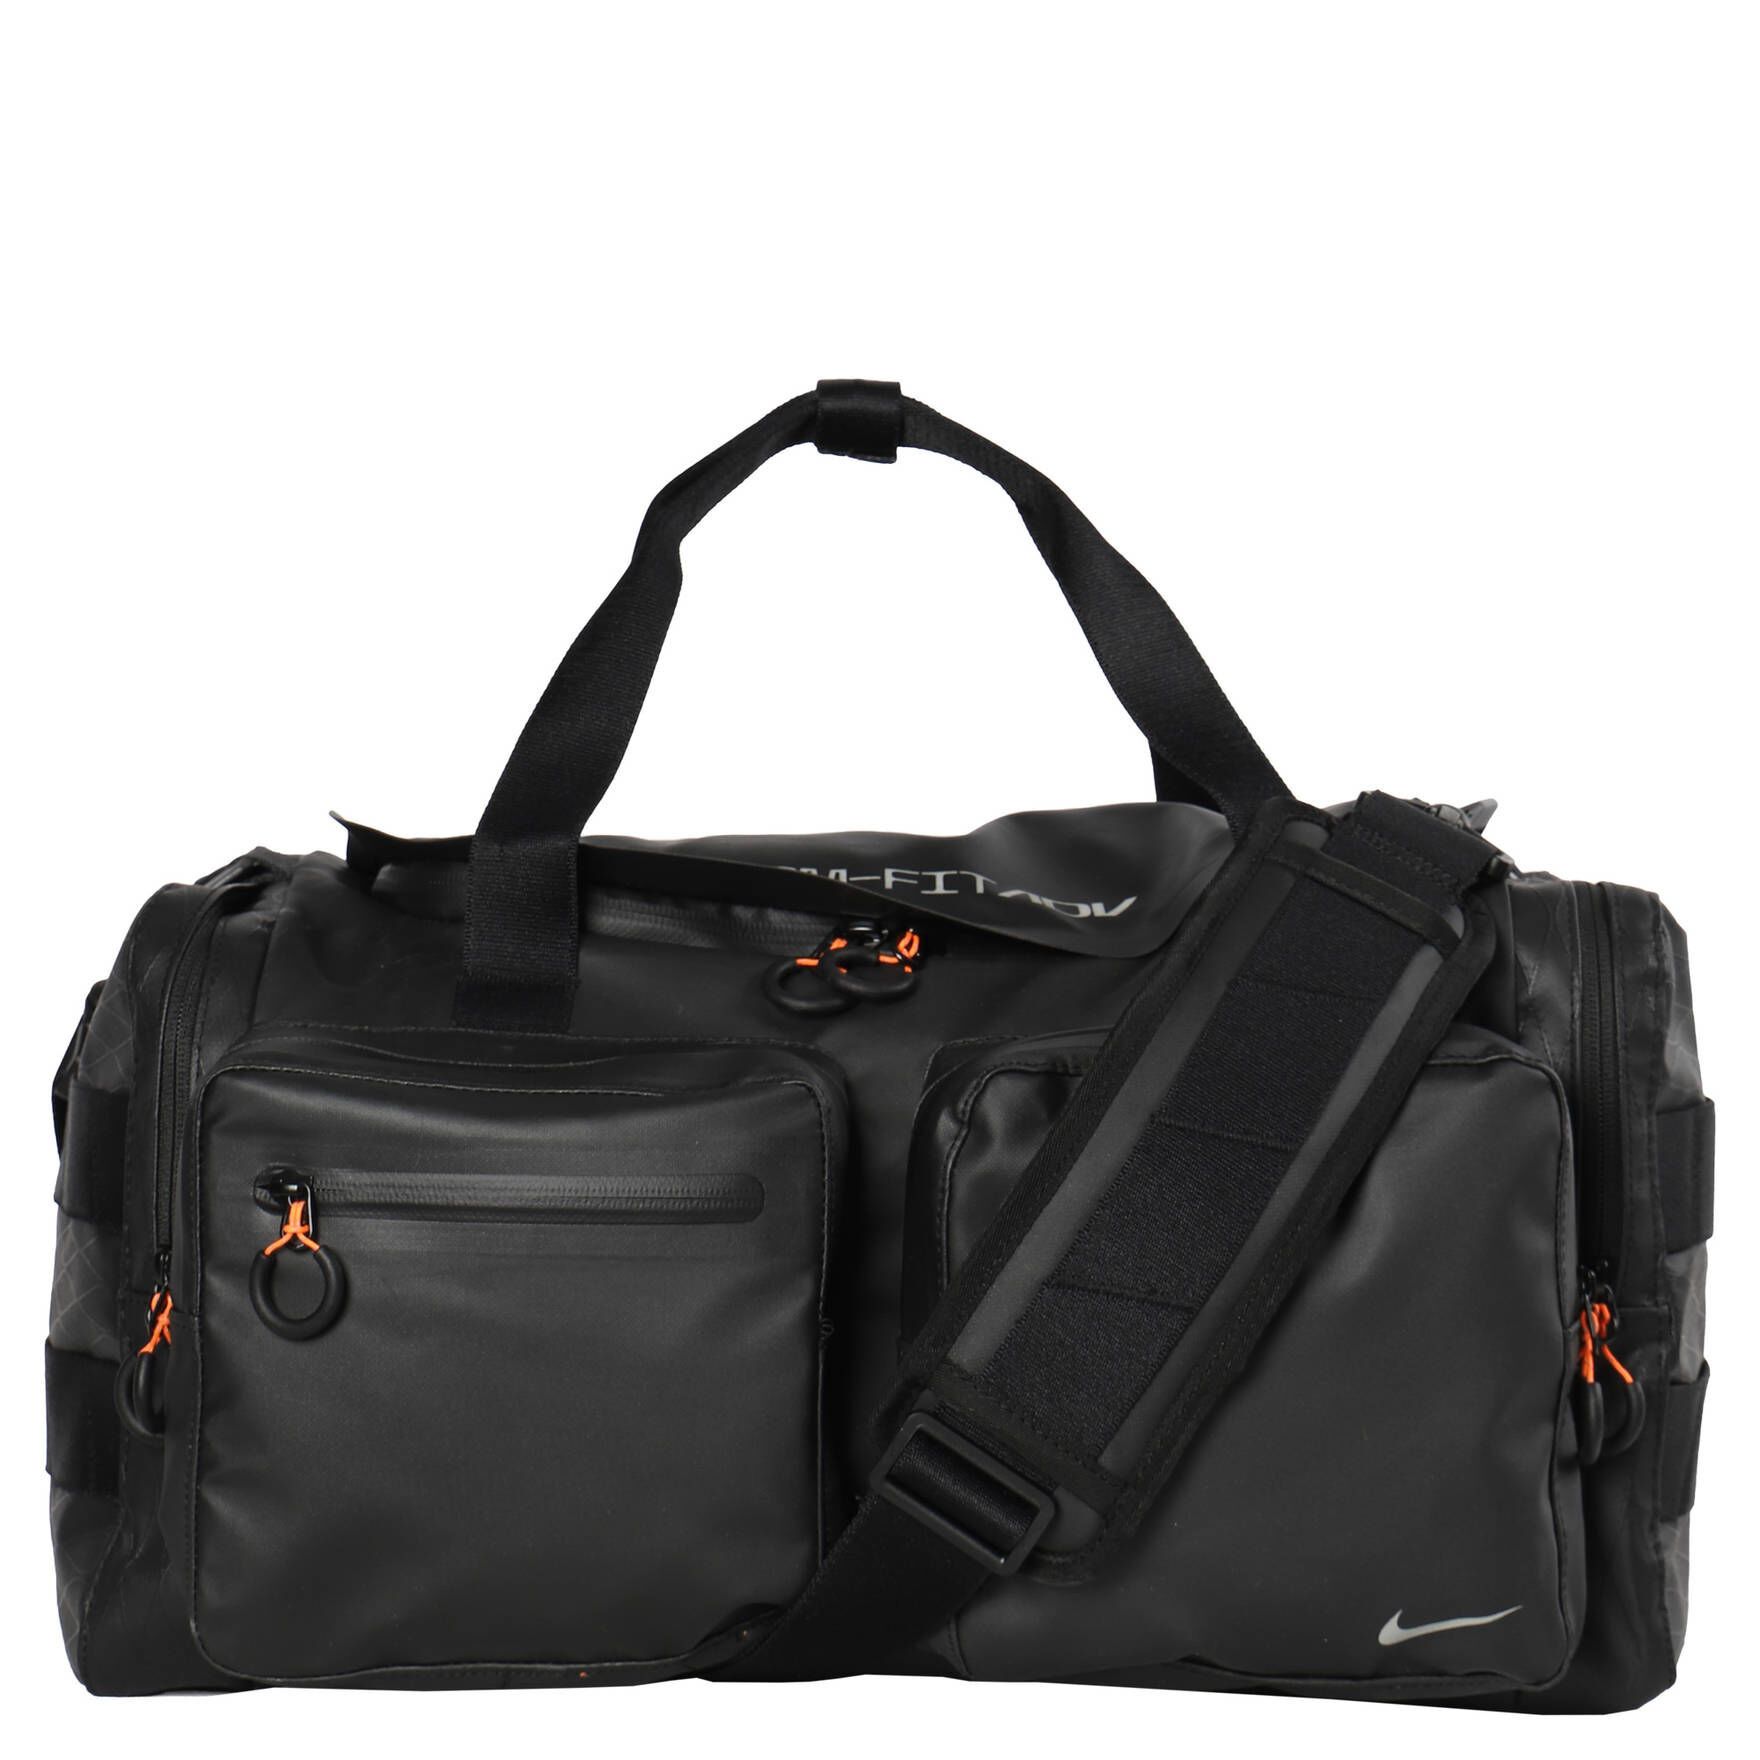 Túi trống thể thao Nike Storm-Fit ADV Utility Power Duffel Bag 31L dùng đi